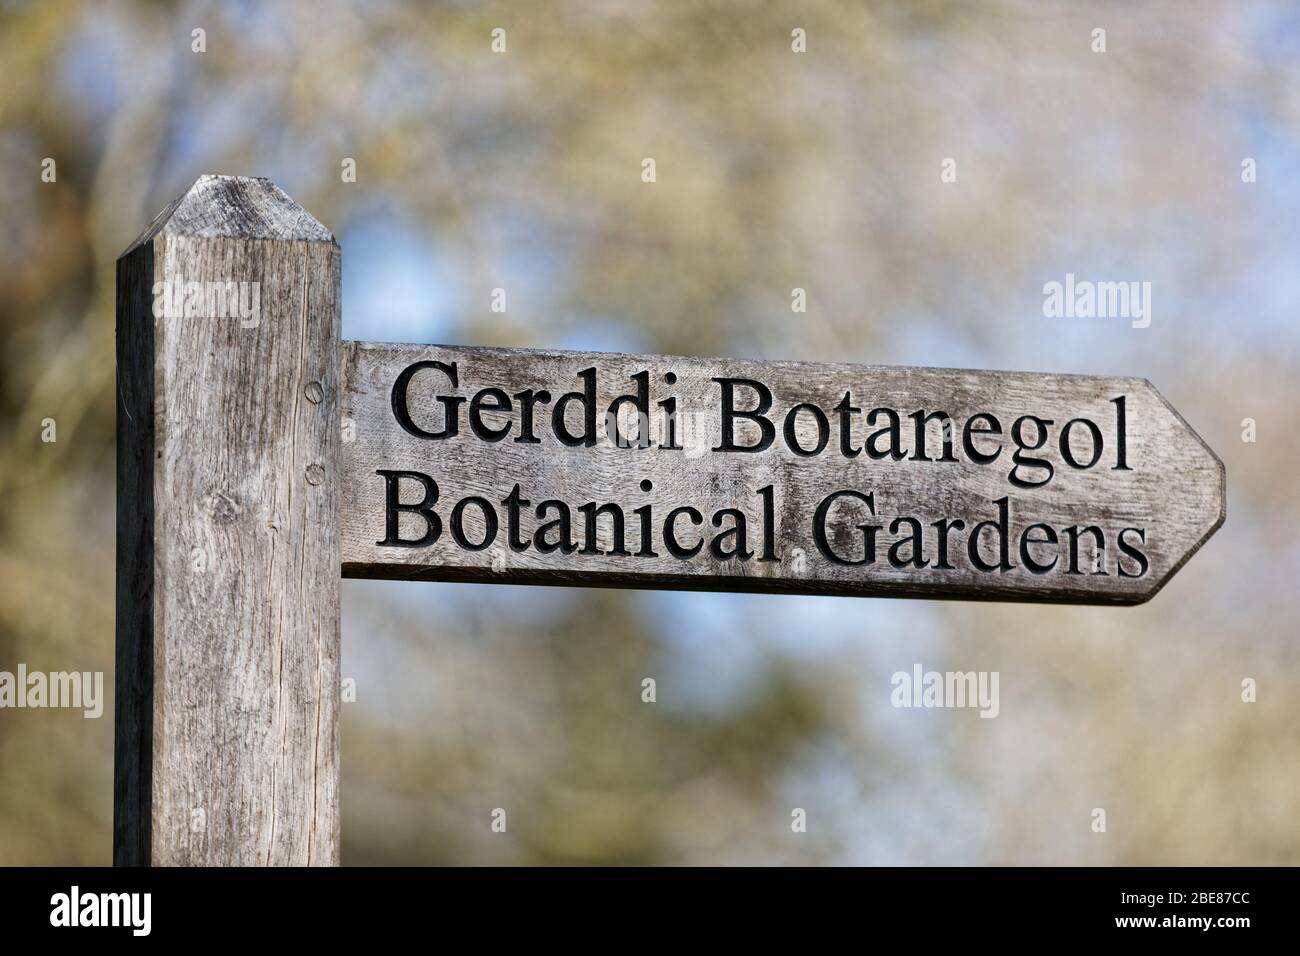 Ein zweisprachiges Botanisches Garten / Gerddi Botanegol Schild in Englisch und Walisisch in Singleton Park, Swansea, Wales, Großbritannien. Freitag, 27. März 2020 Stockfoto